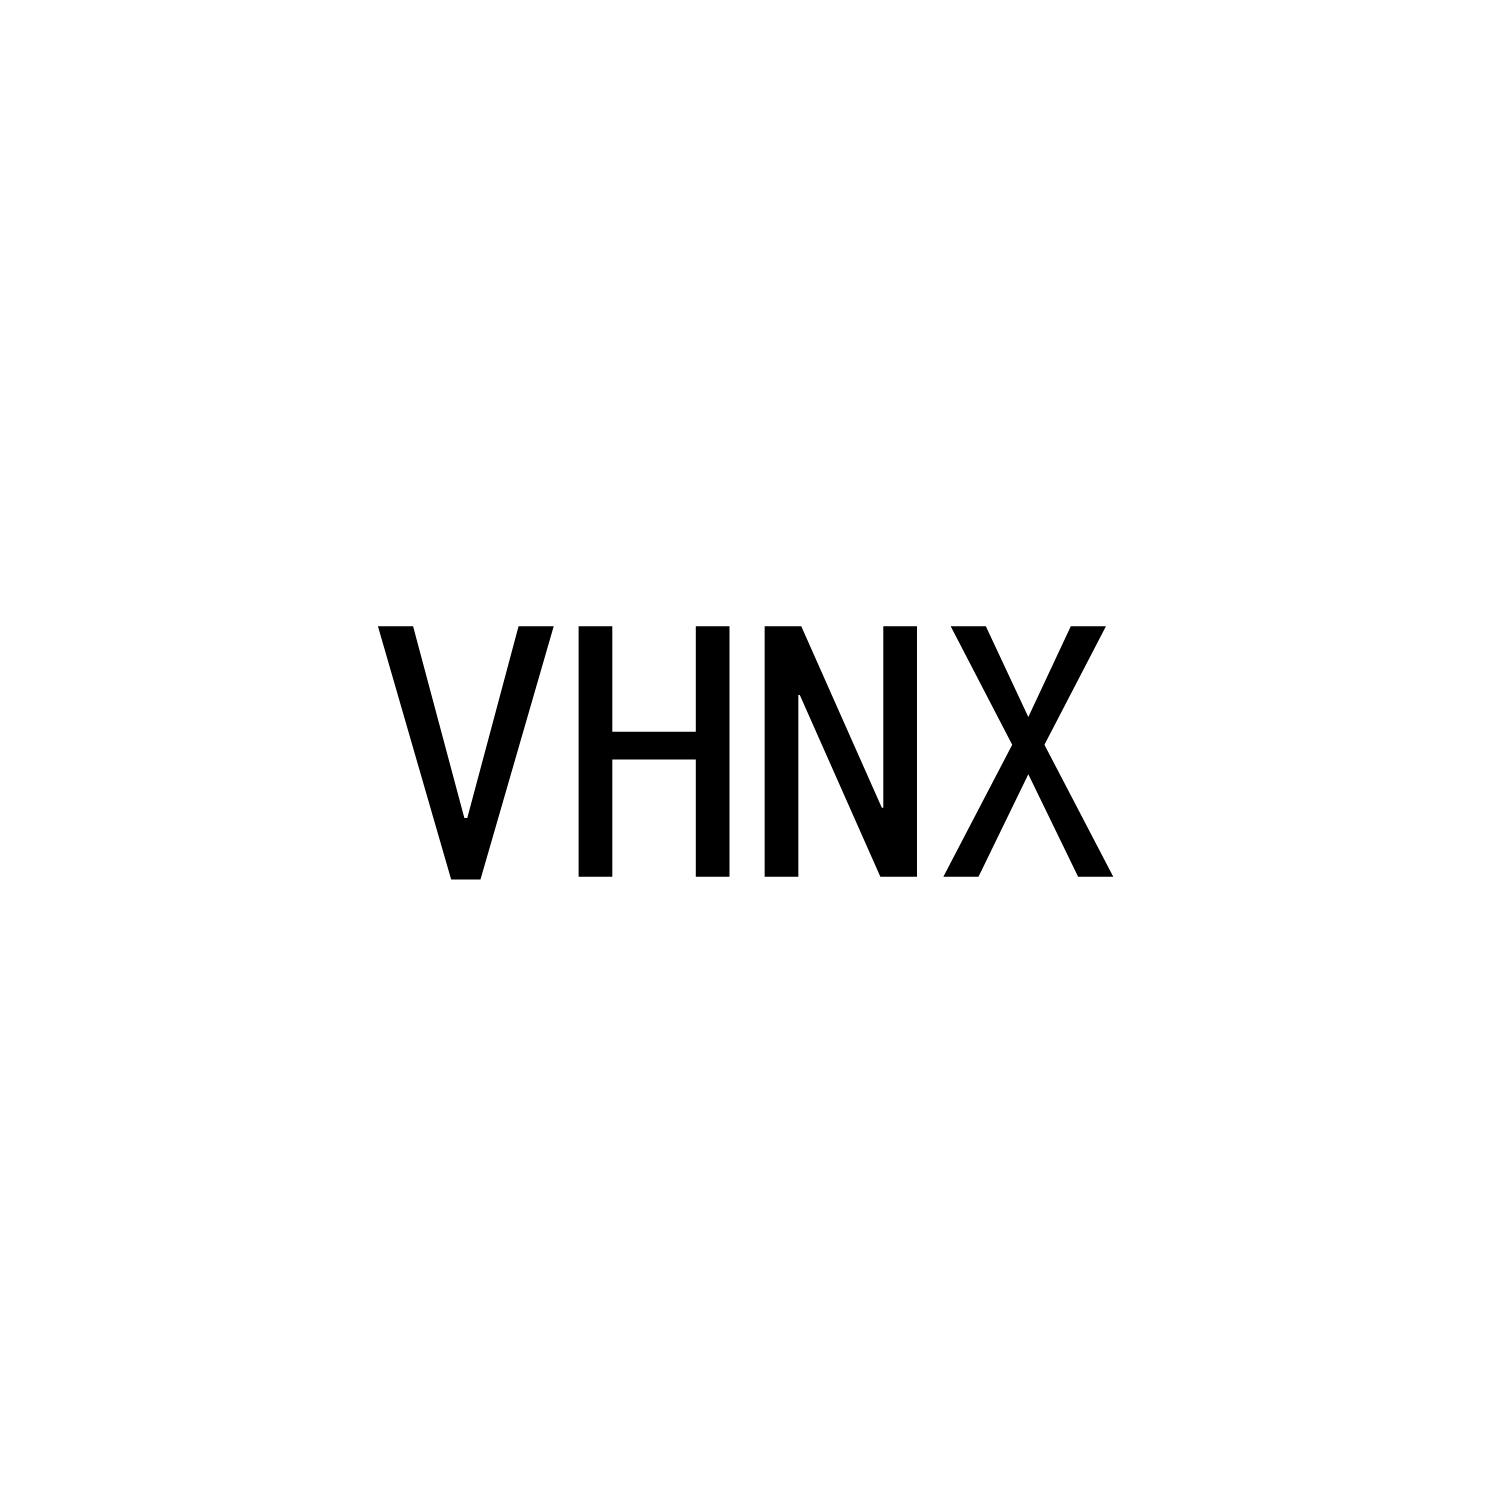 VHNX